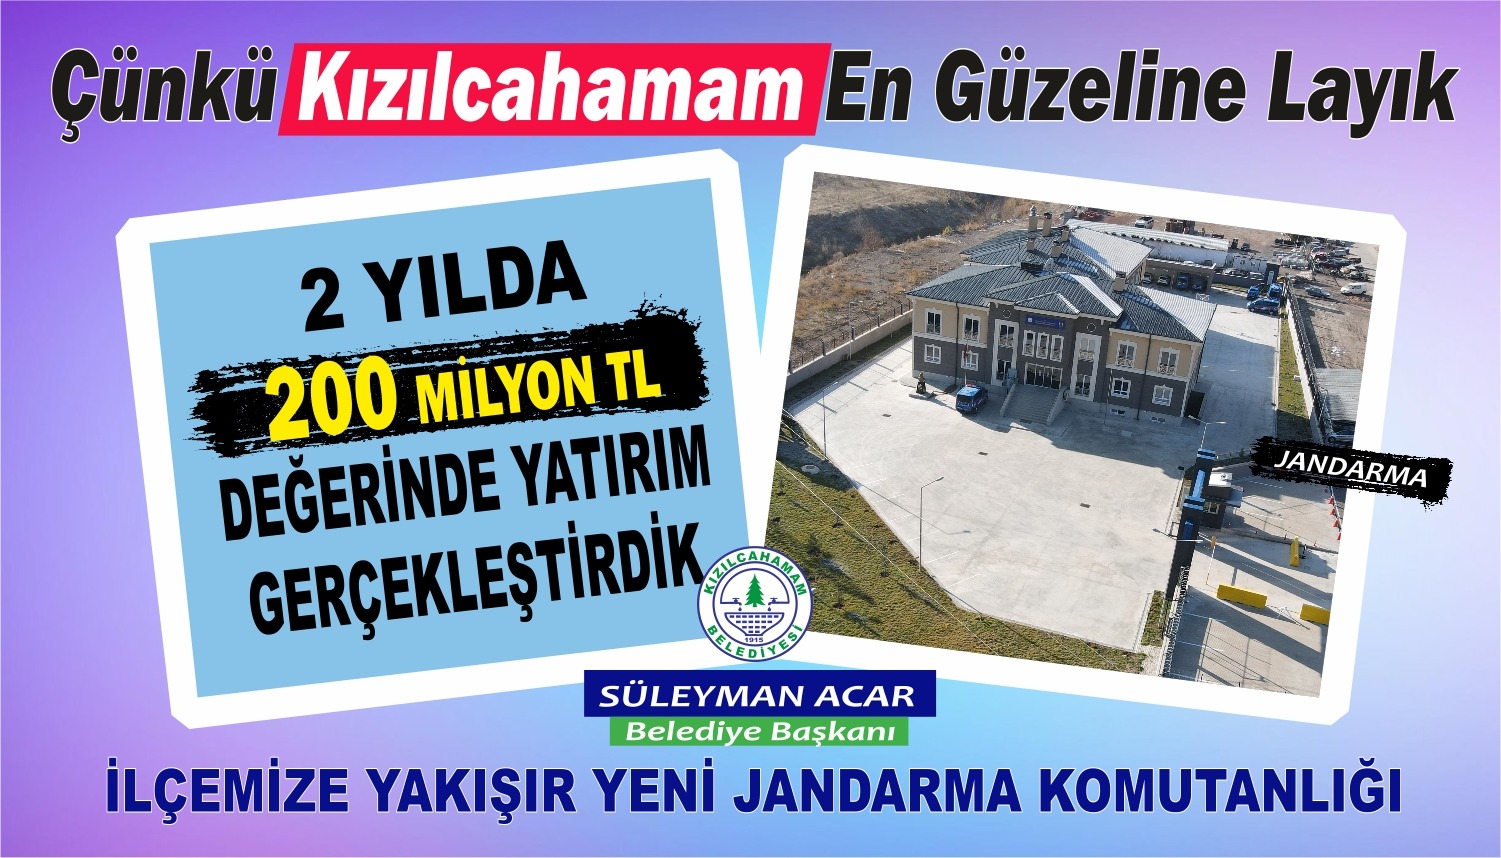 Kızılcahamam Belediyesi Tamamlanan Projeler